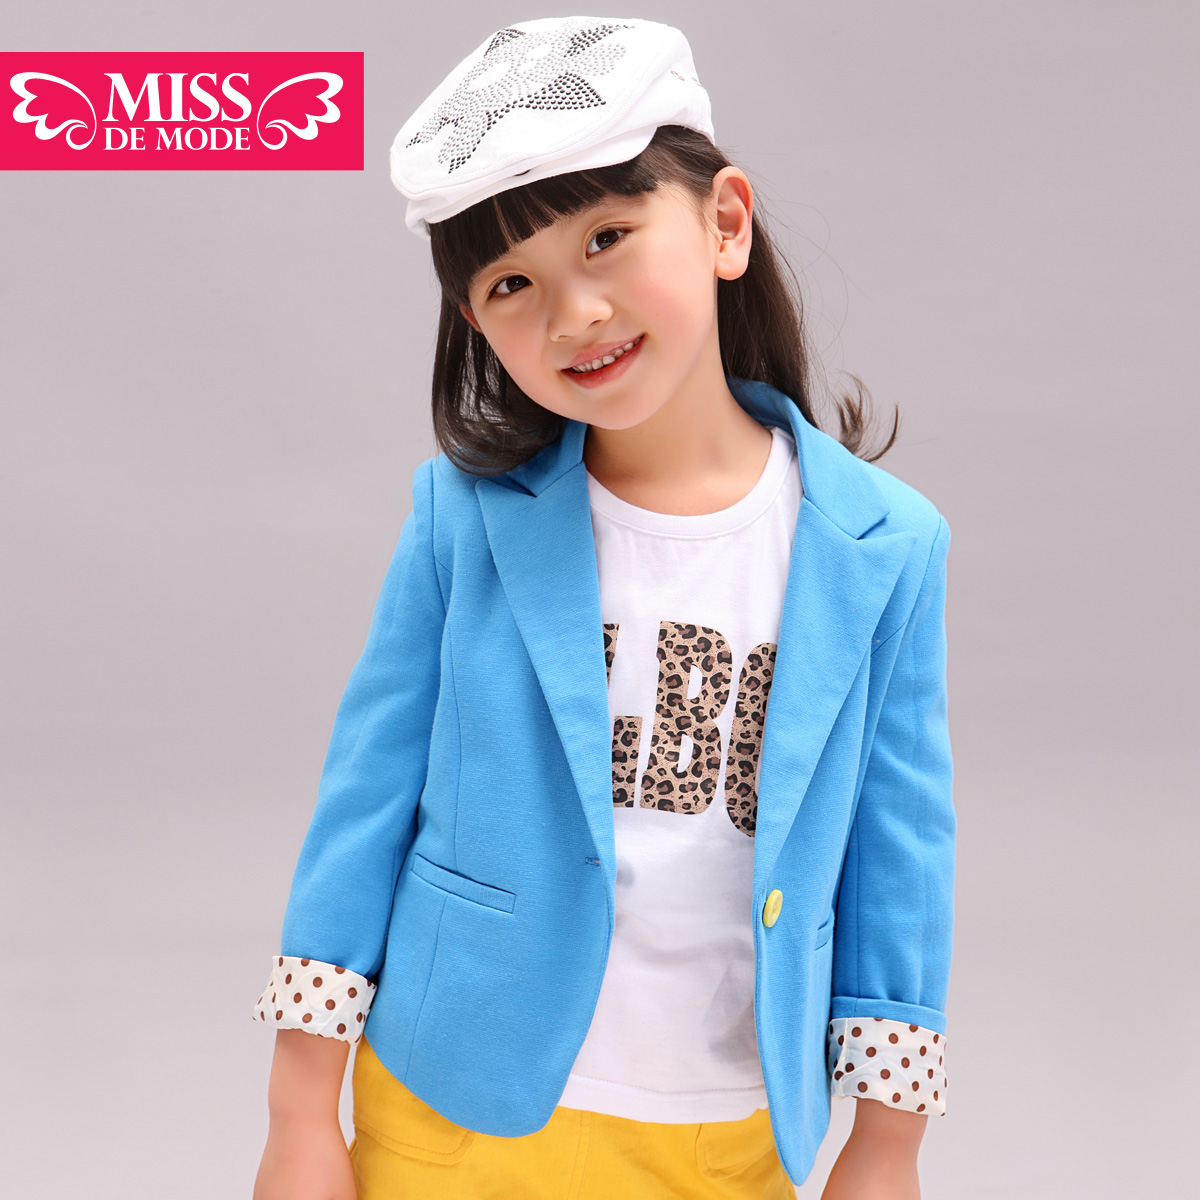 Children's clothing girl child elegant candy color blazer 2013 spring child suit jacket